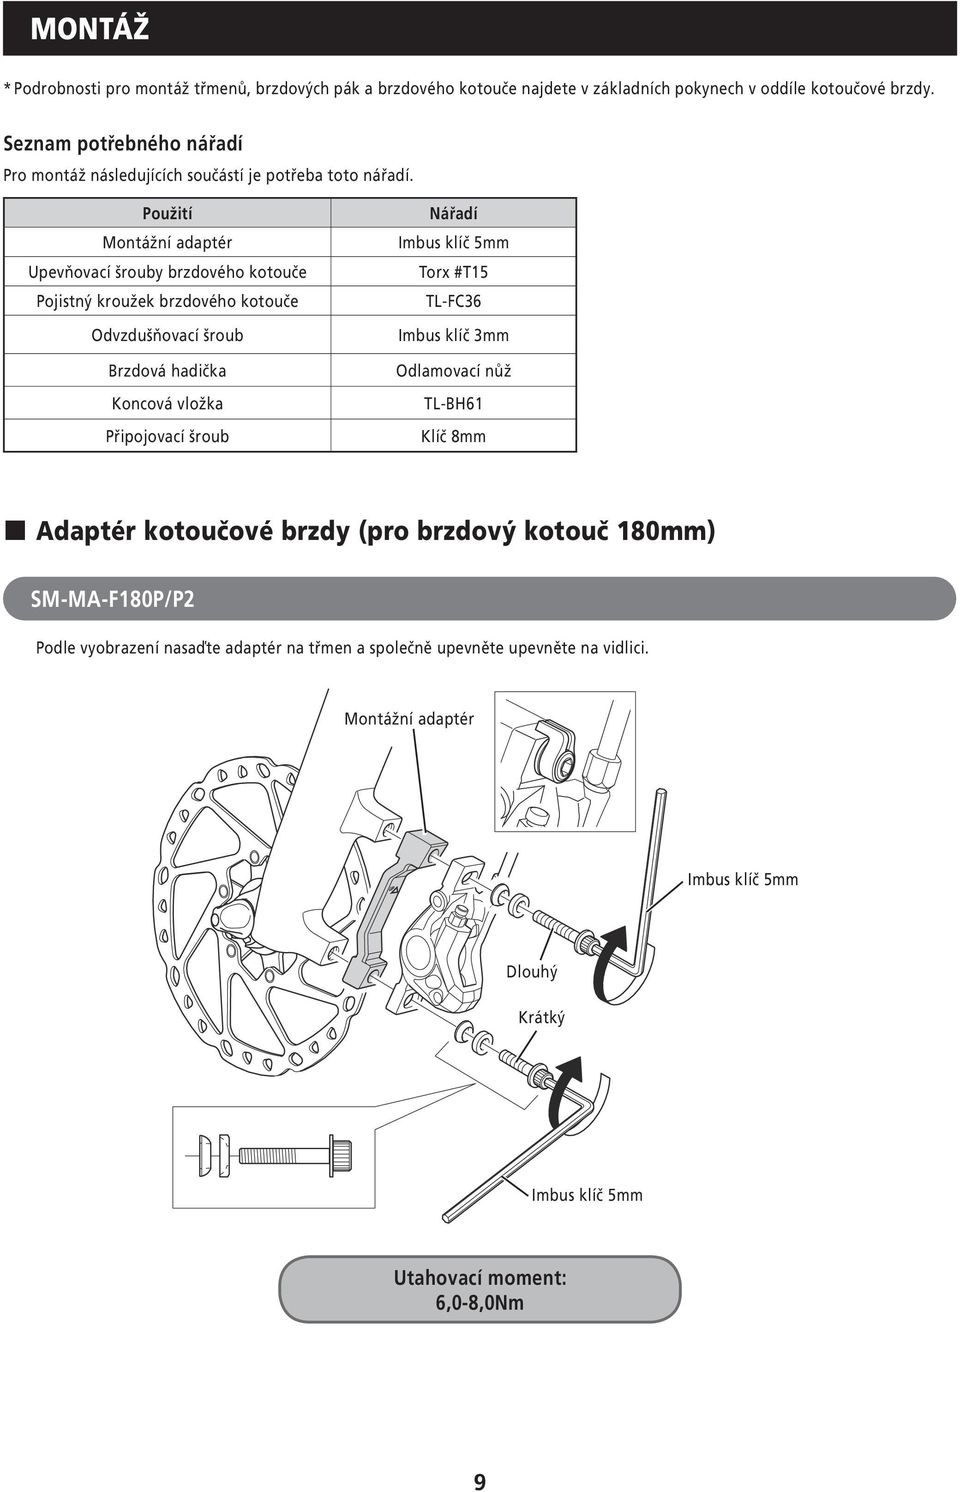 Použití Nářadí Montážní adaptér Imbus klíč 5mm Upevňovací šrouby brzdového kotouče Torx #T15 Pojistný kroužek brzdového kotouče TL-FC36 Odvzdušňovací šroub Brzdová hadička